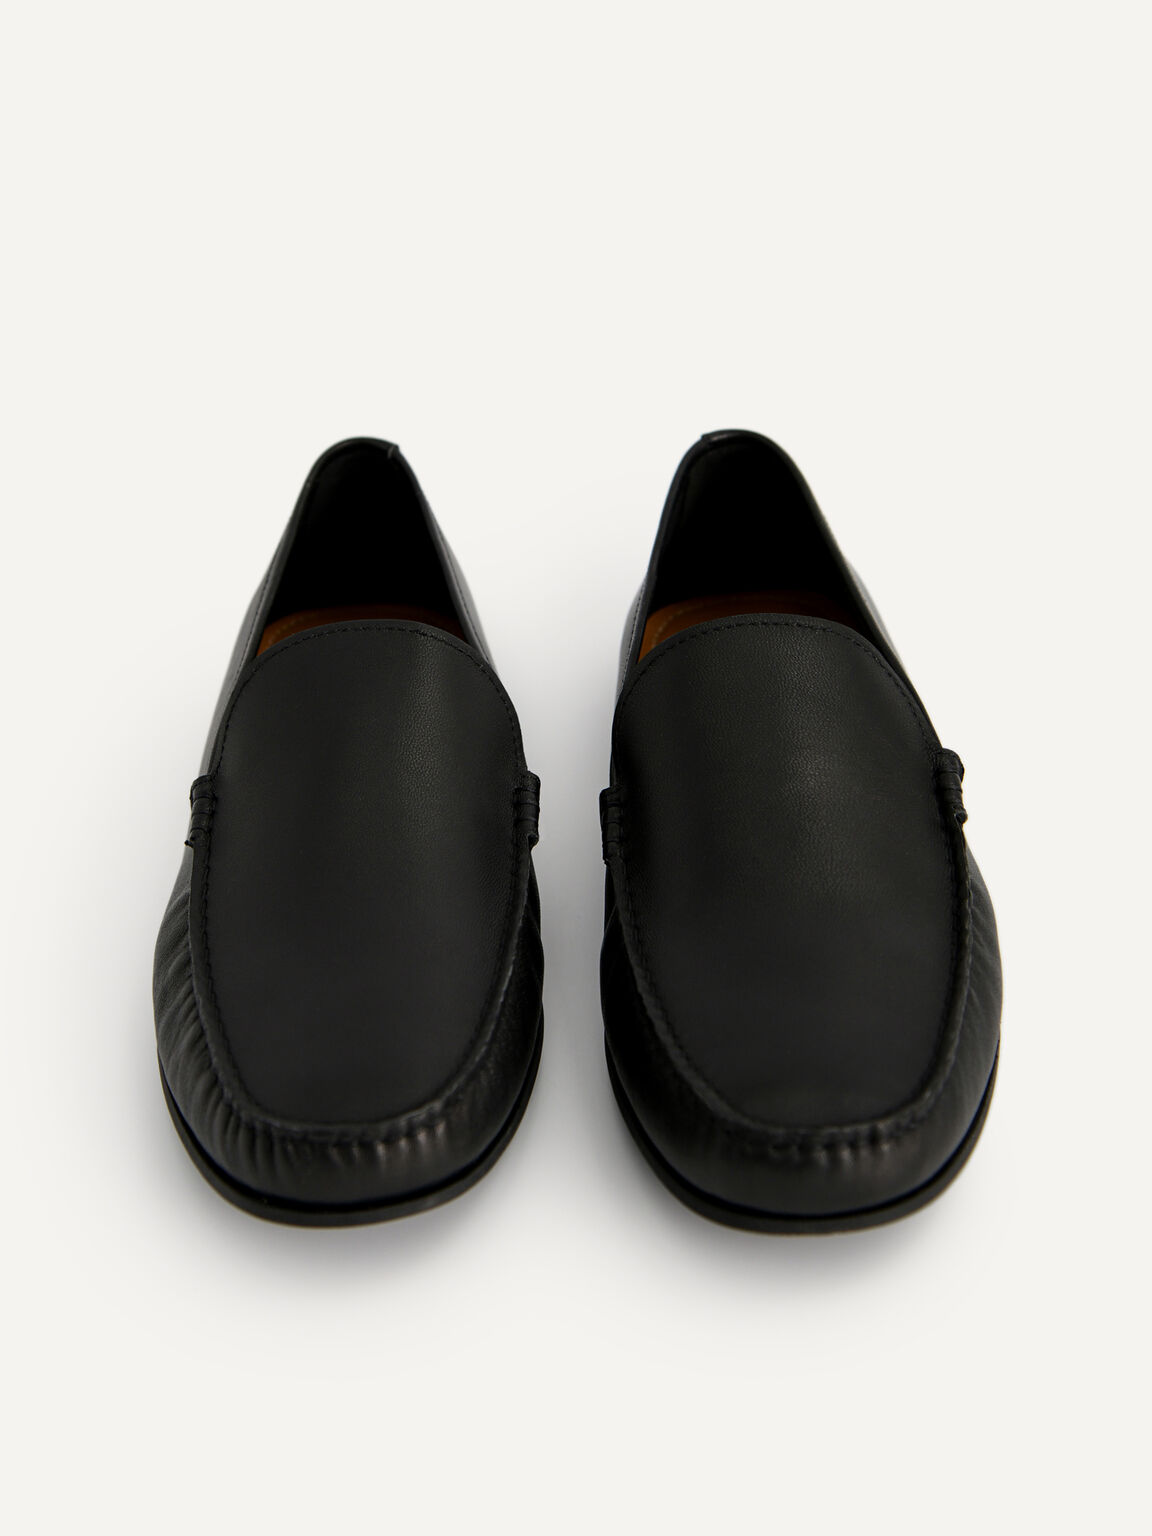 皮革樂福鞋, 黑色